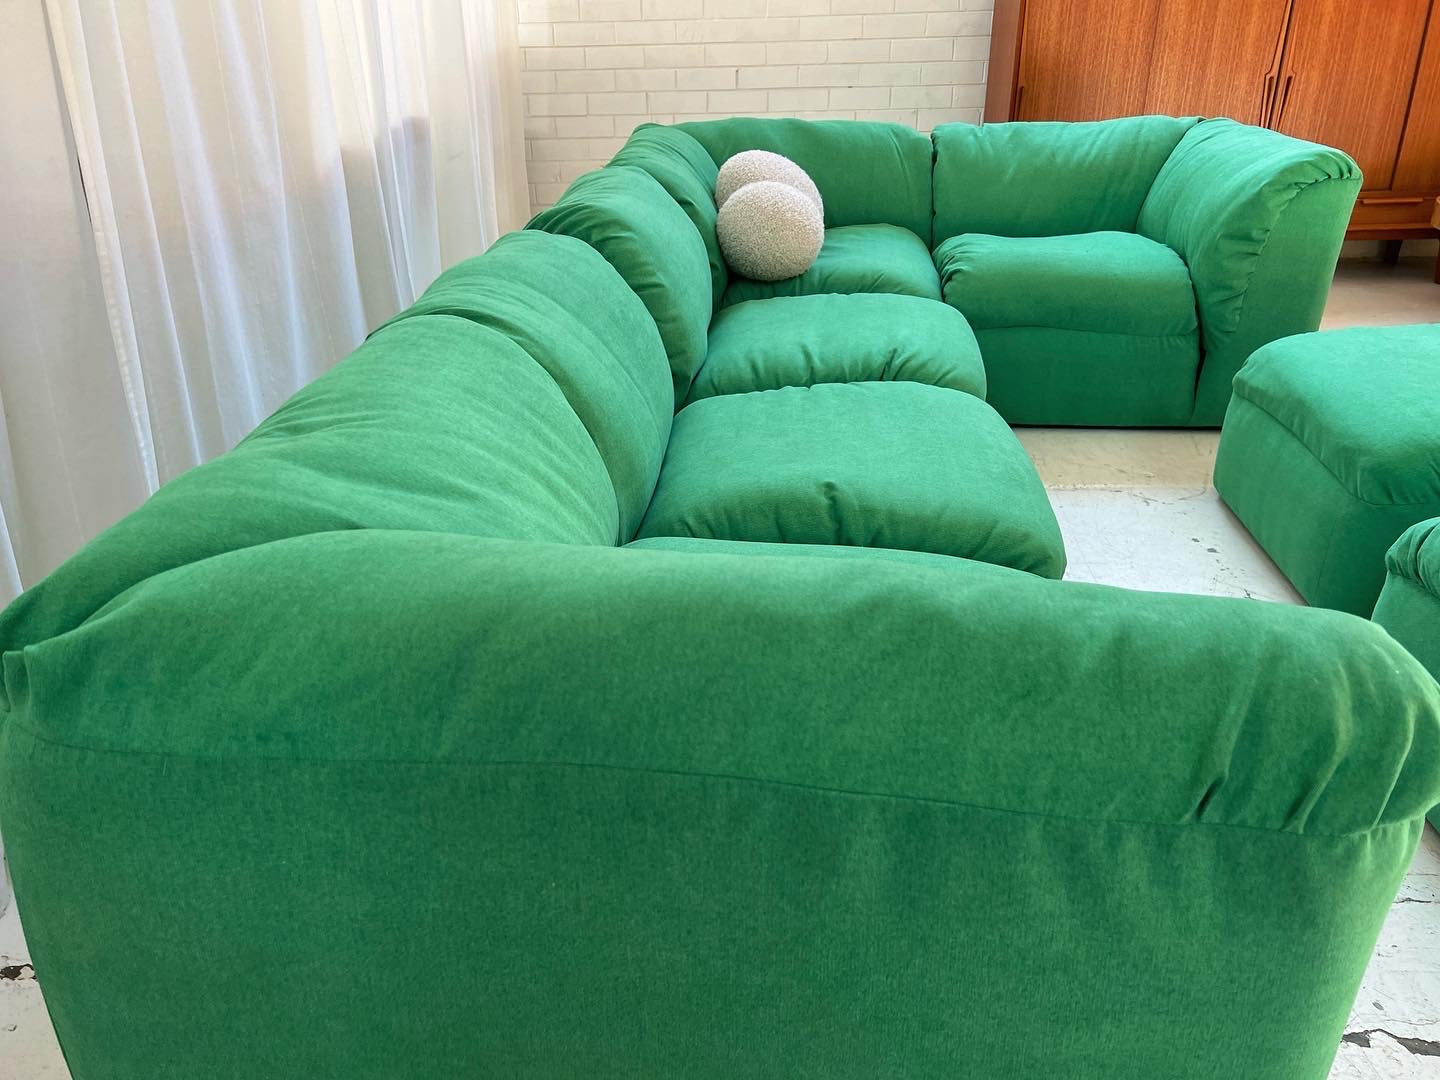 Bespoke Pillowy Green Modular Sofa